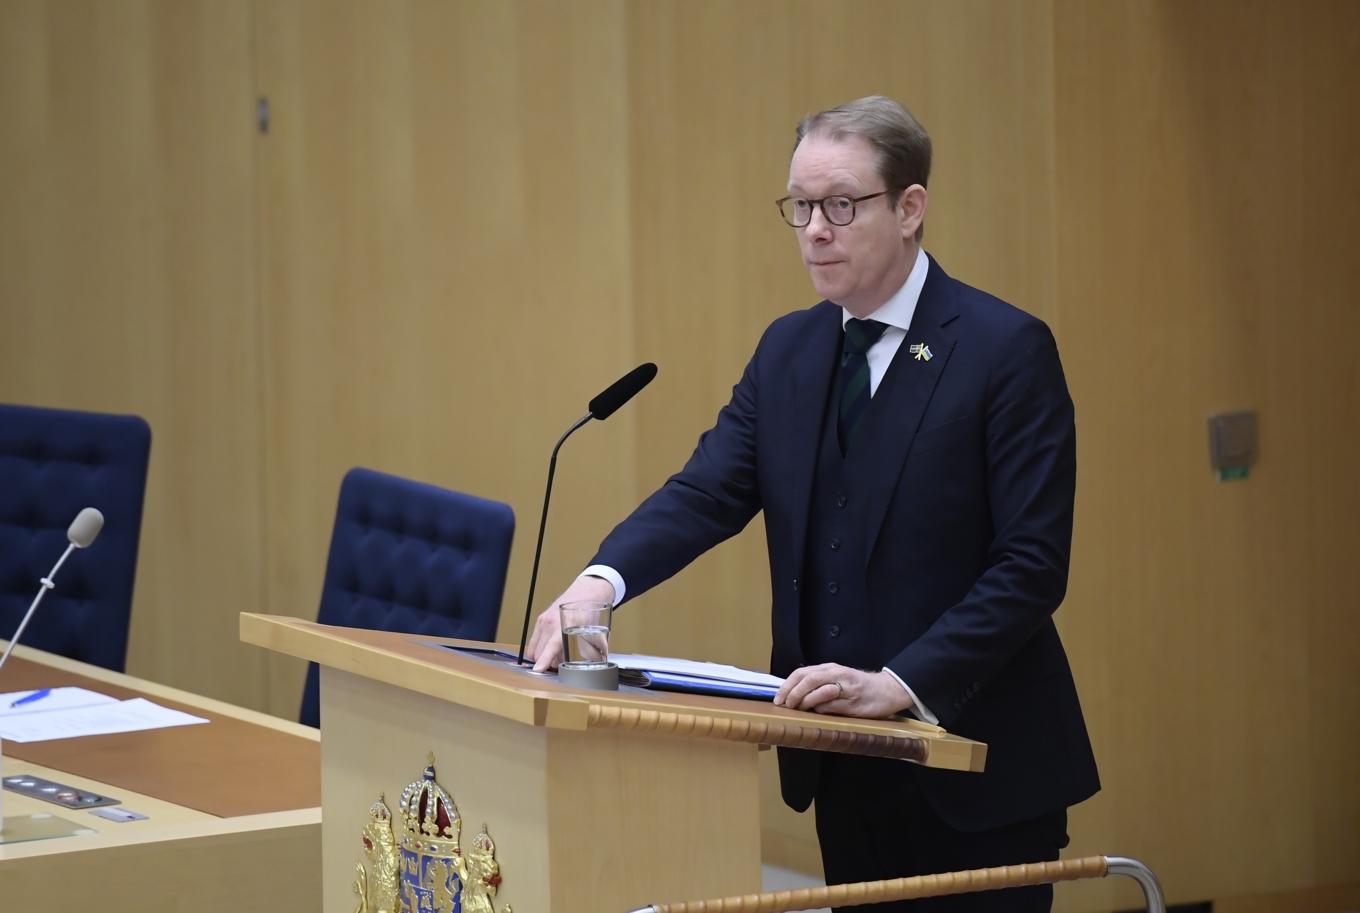 Utrikesminister Tobias Billström (M) inleder debatten med att presentera regeringens utrikesdeklaration. Foto: Samuel Steén/TT